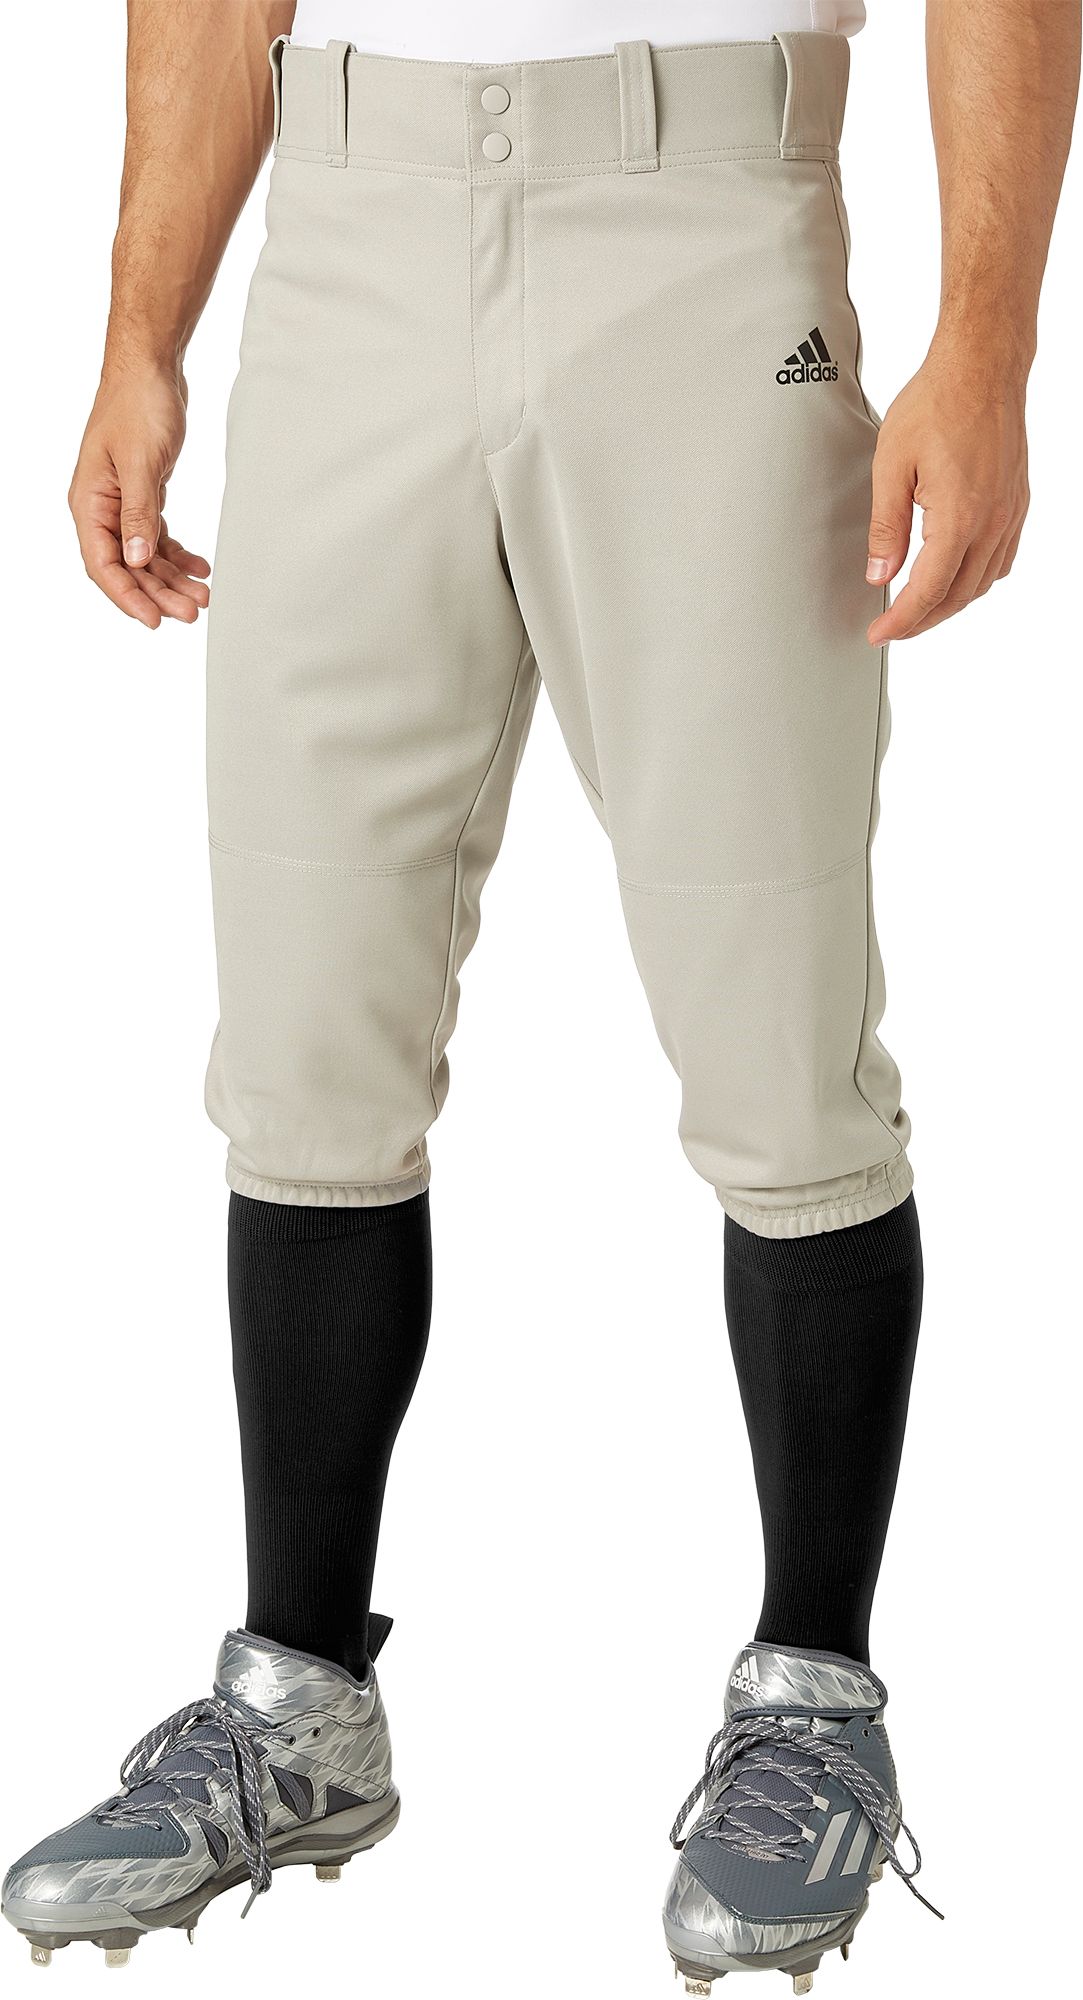 adidas baseball pants size chart